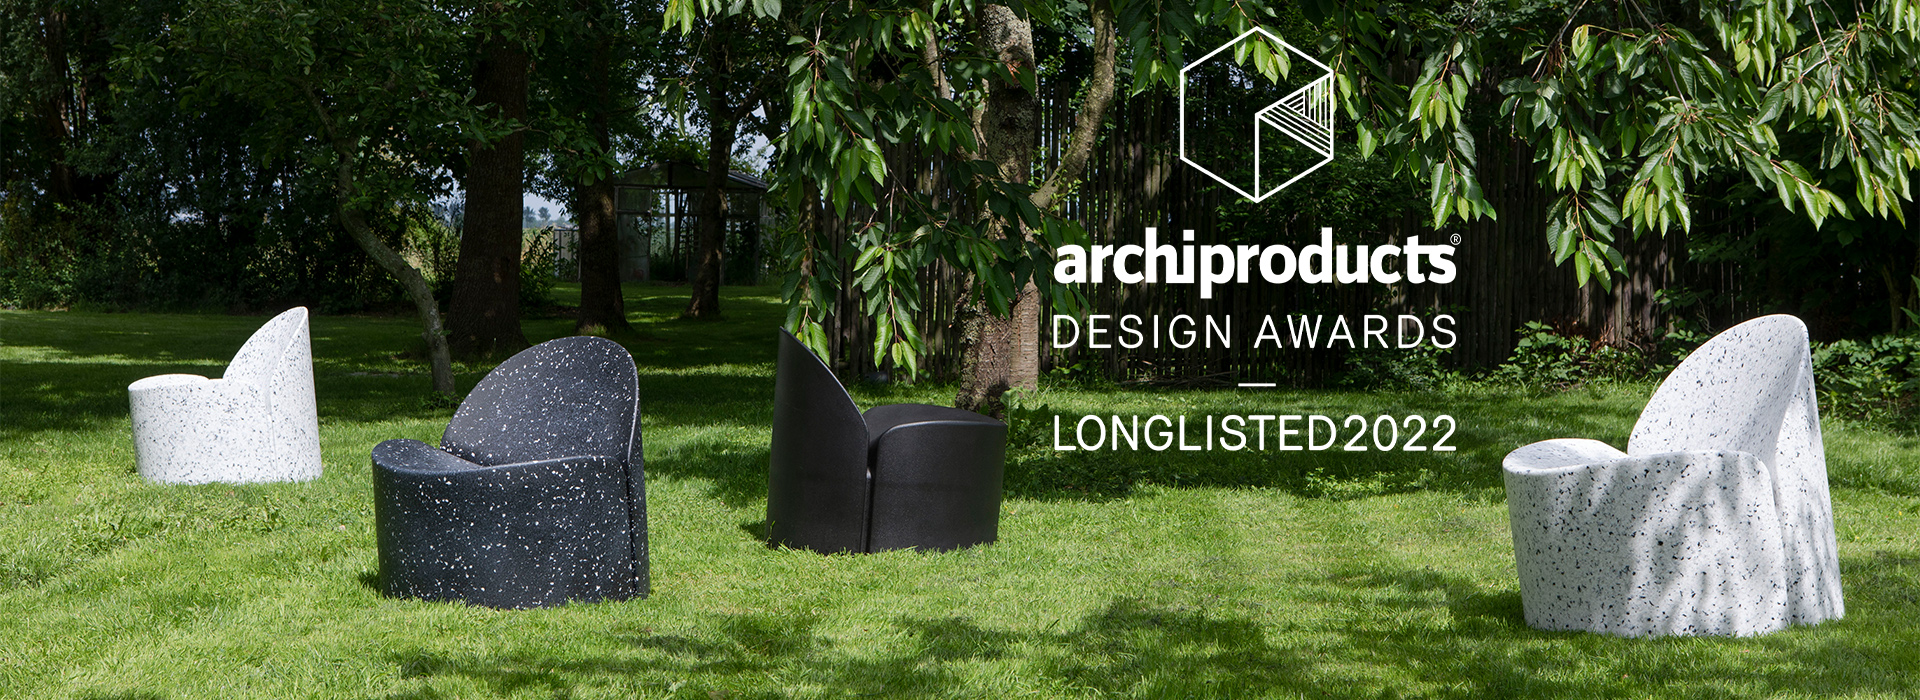 Op de longlist voor de Archiproducts Design Awards 2022: The Banne Bloom chair